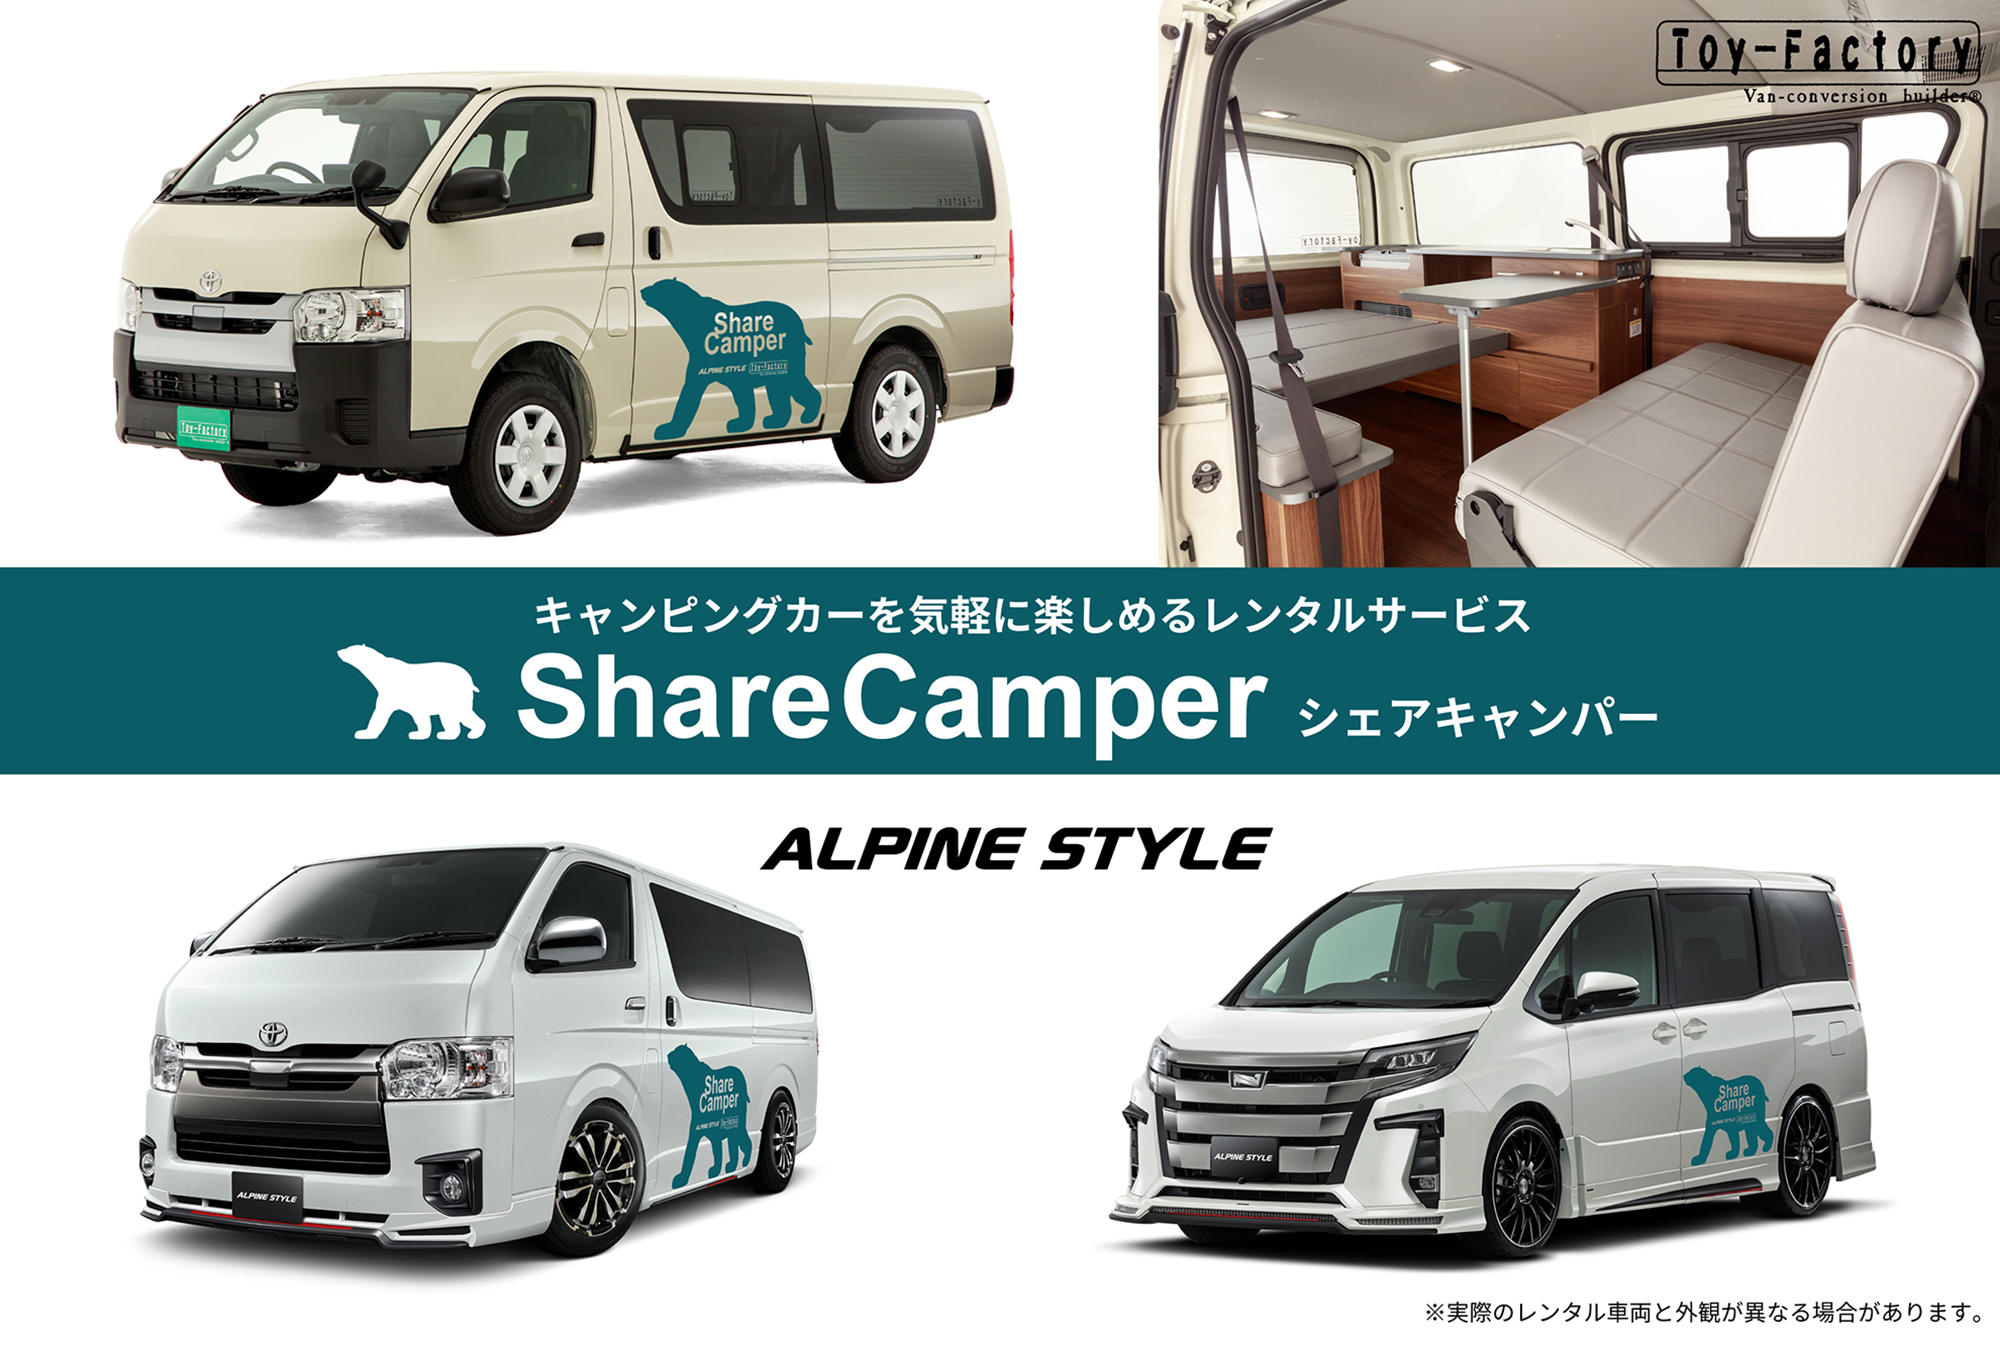   電車で来店、旅に出られるキャンピングカーレンタル「Share Camper シェアキャンパー」サービス開始